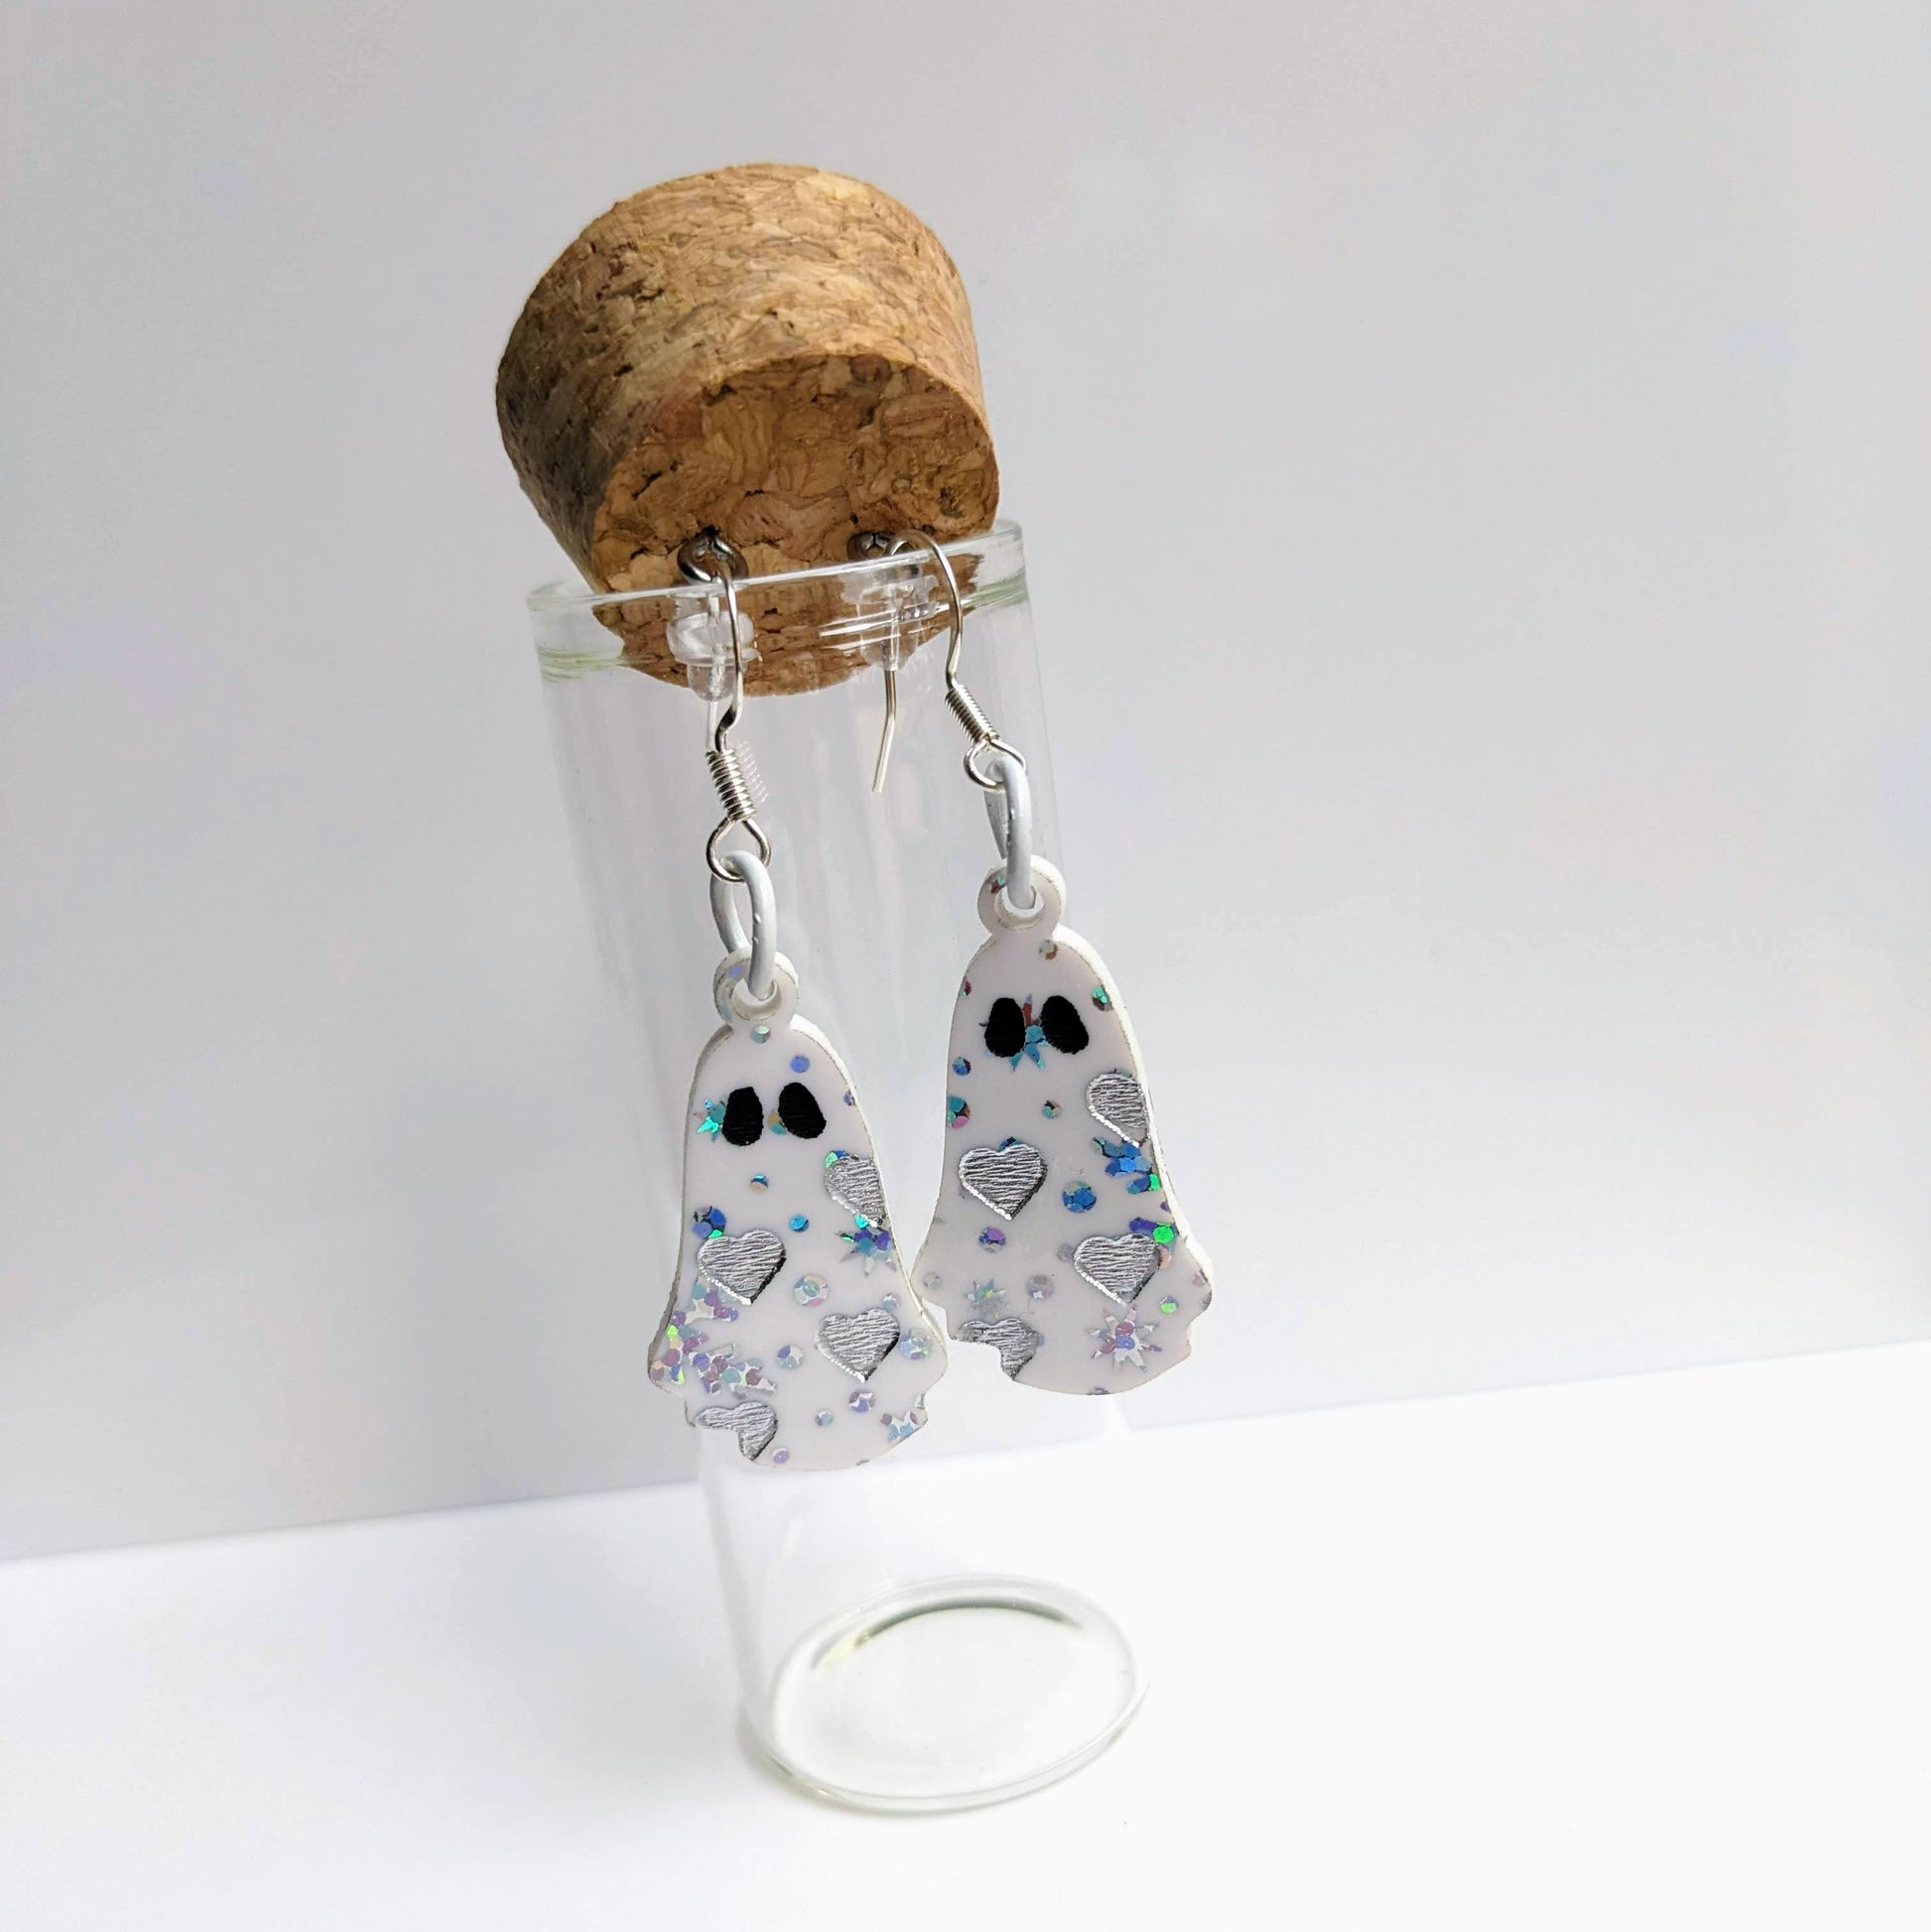 alt="Snow acrylic heart ghost earrings"